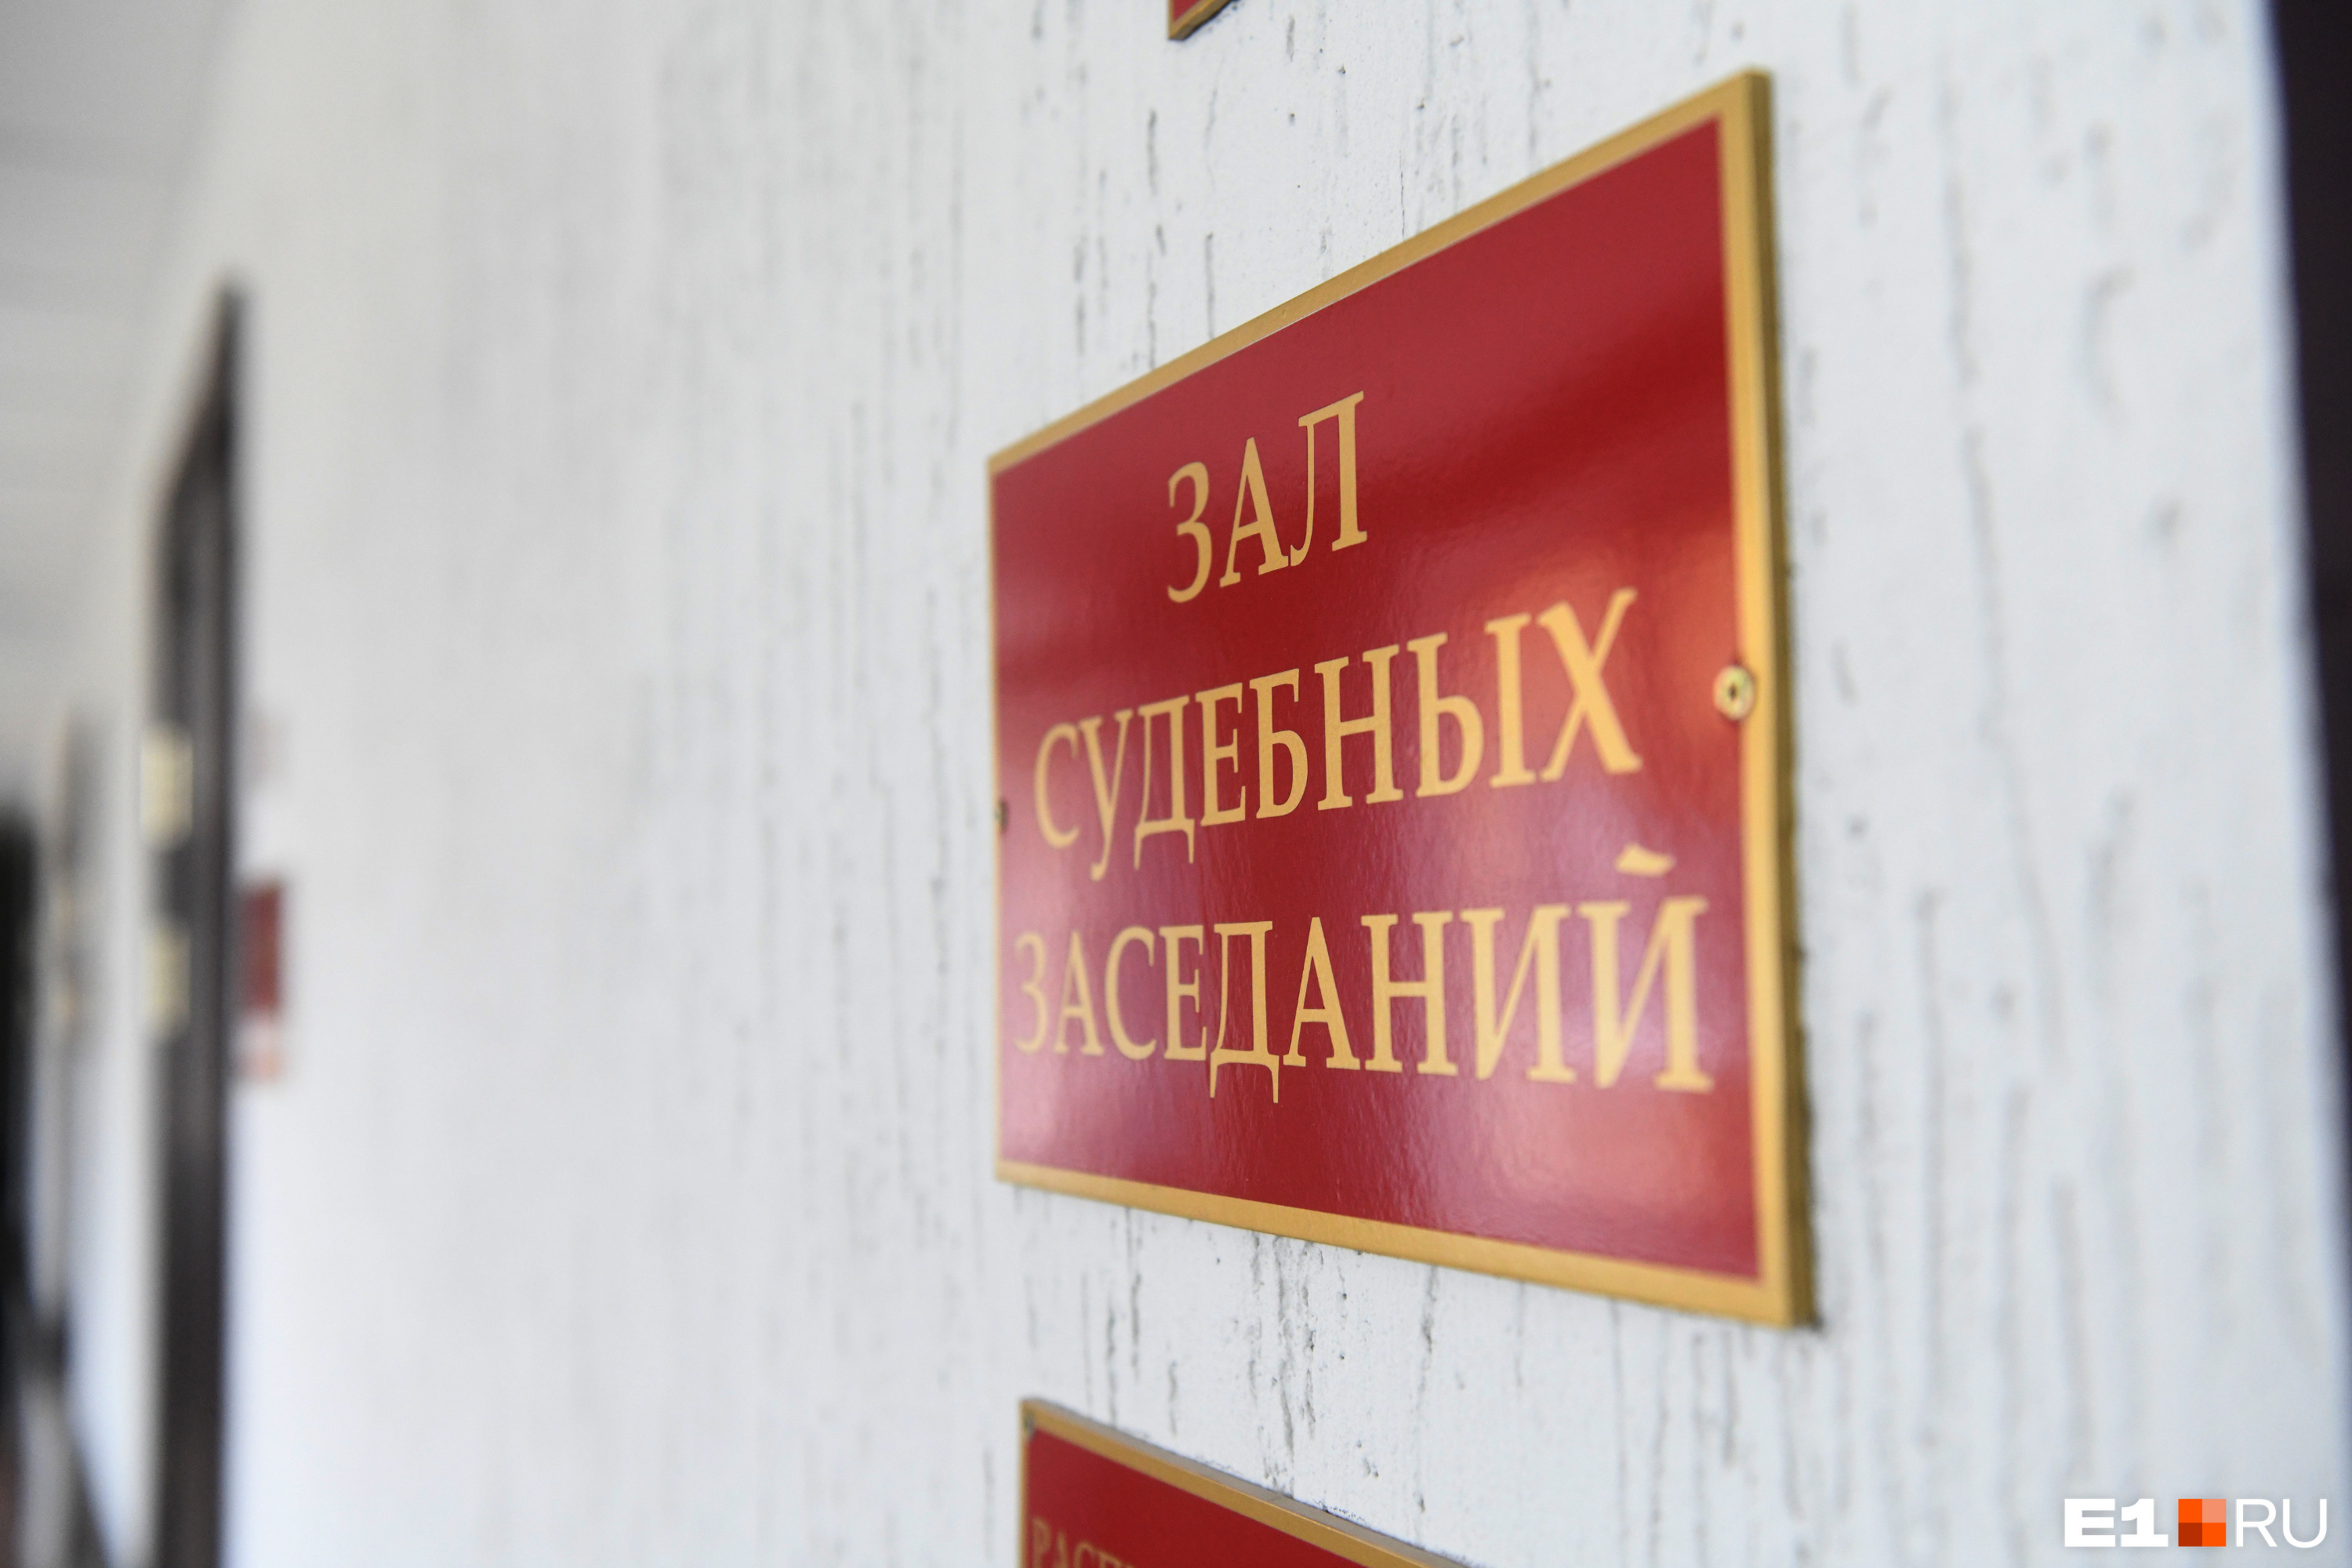 В Екатеринбурге начали судить подростков из спецшколы. Их обвиняют в изнасиловании детей